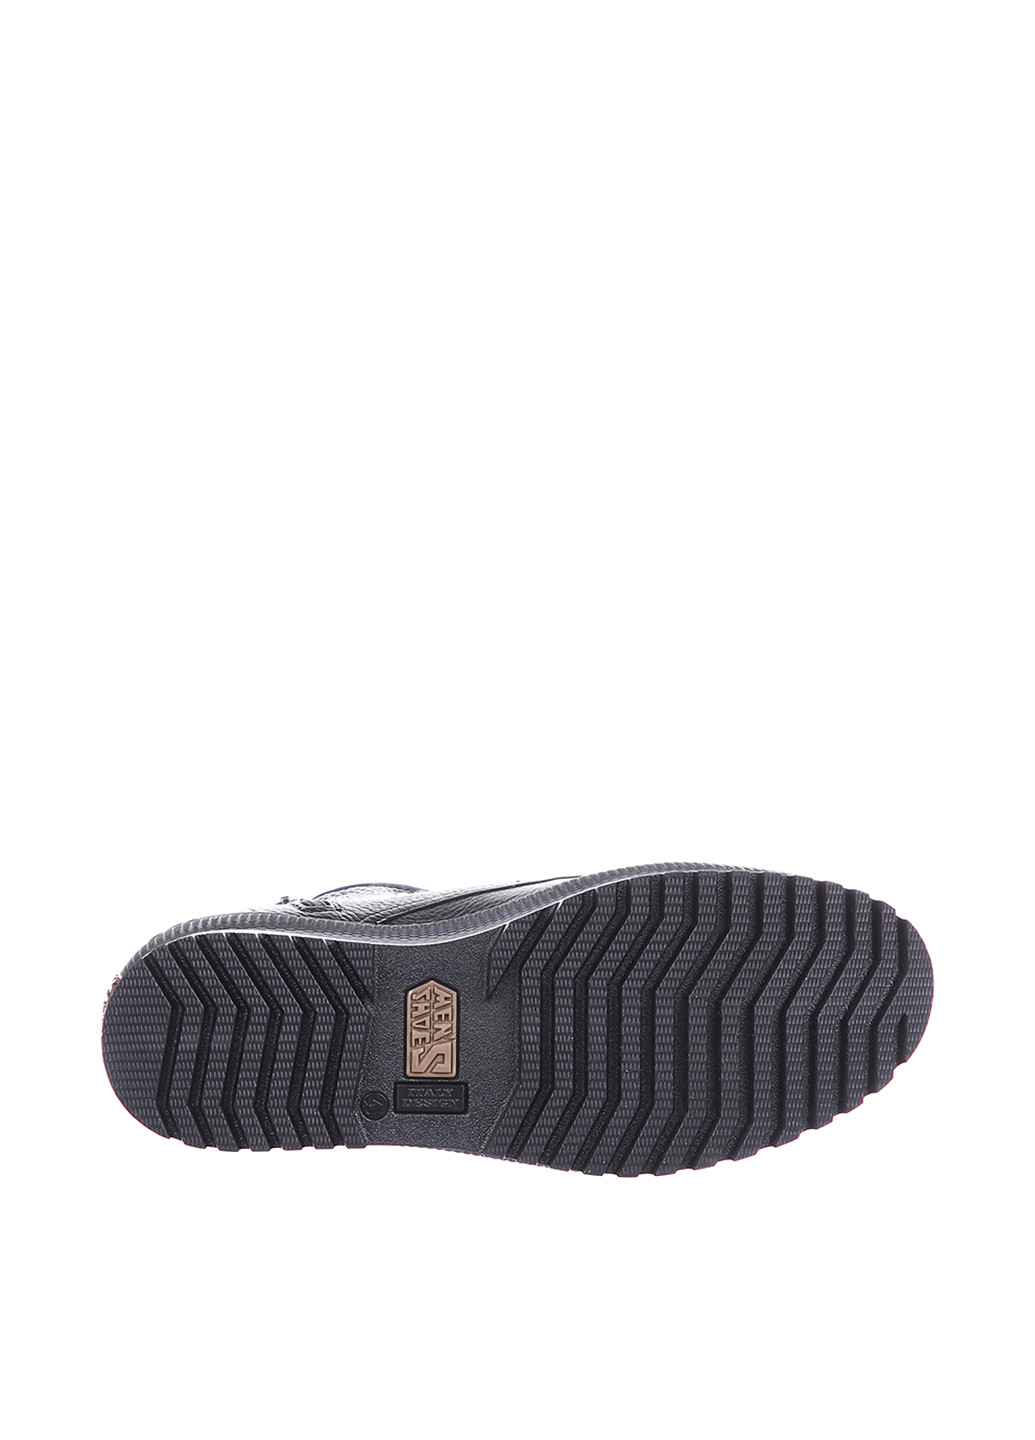 Черные зимние ботинки редвинги Corso Vito